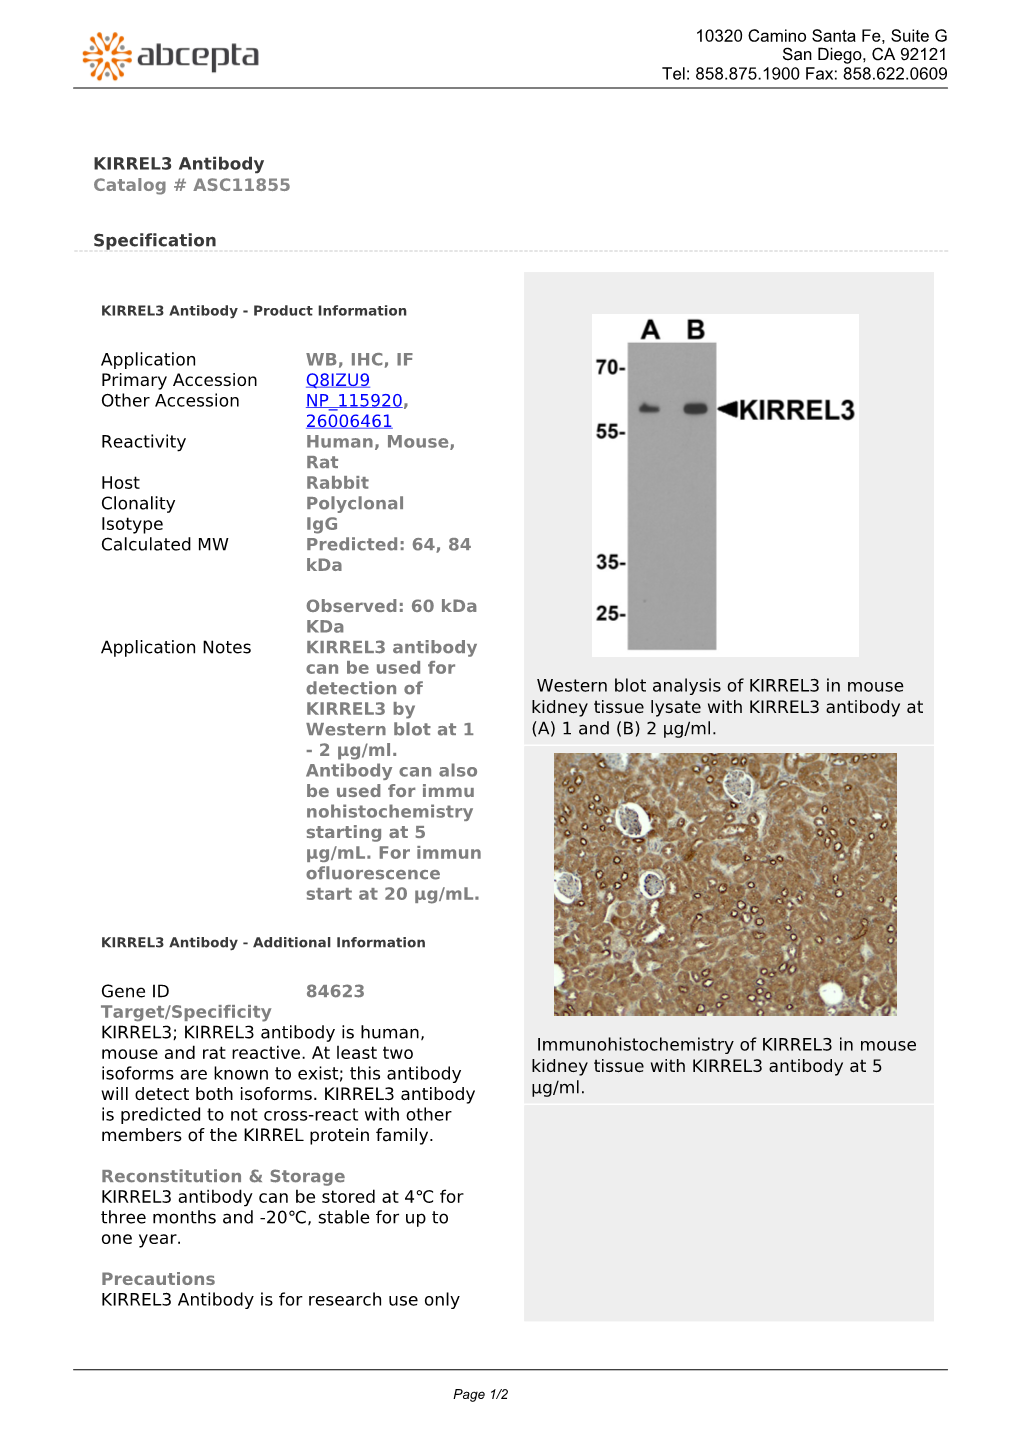 KIRREL3 Antibody Catalog # ASC11855